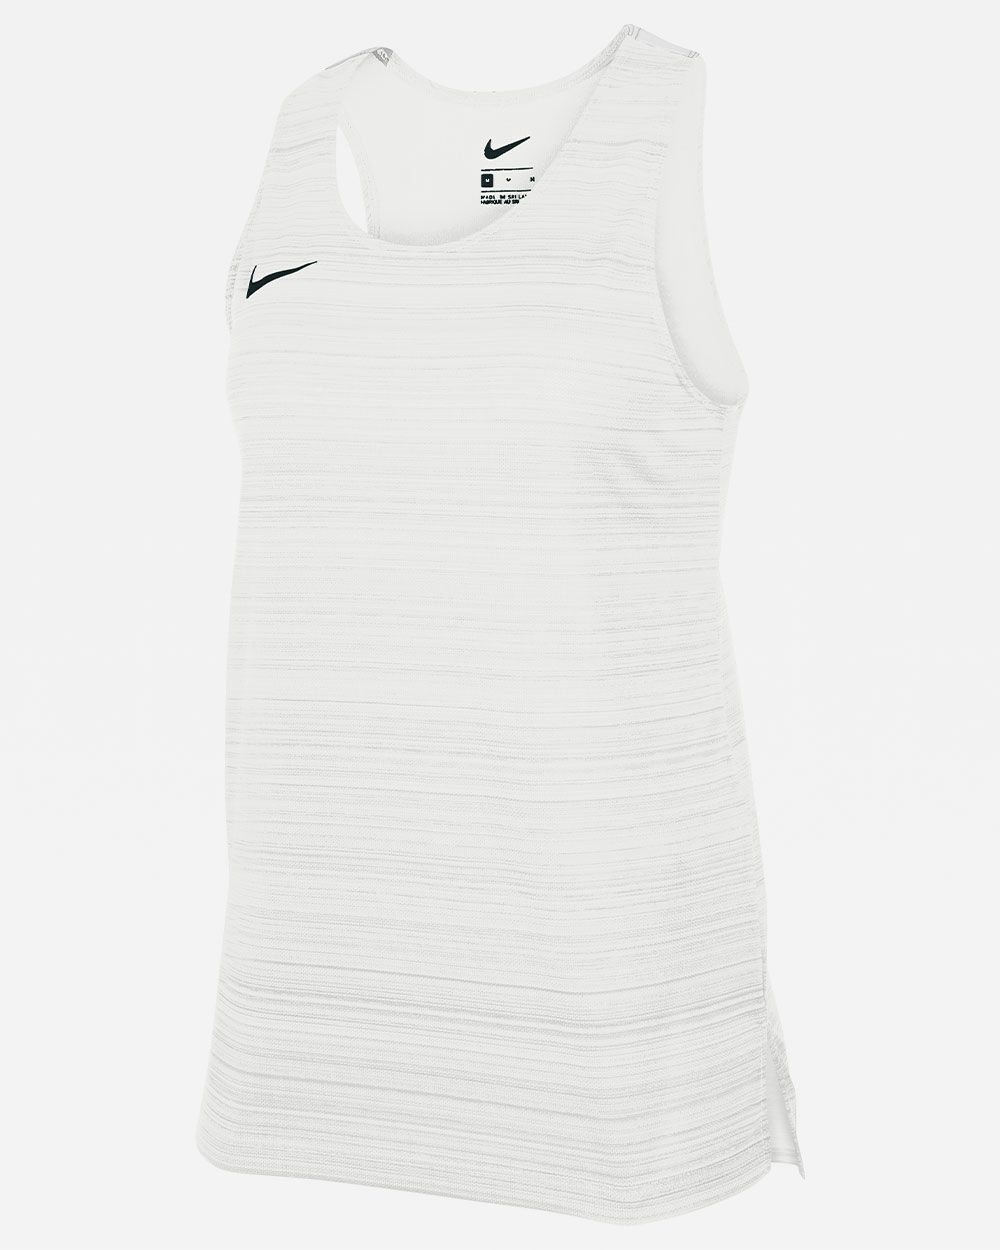 Camiseta sin mangas de running Nike Stock Blanco para Mujeres - NT0301-100